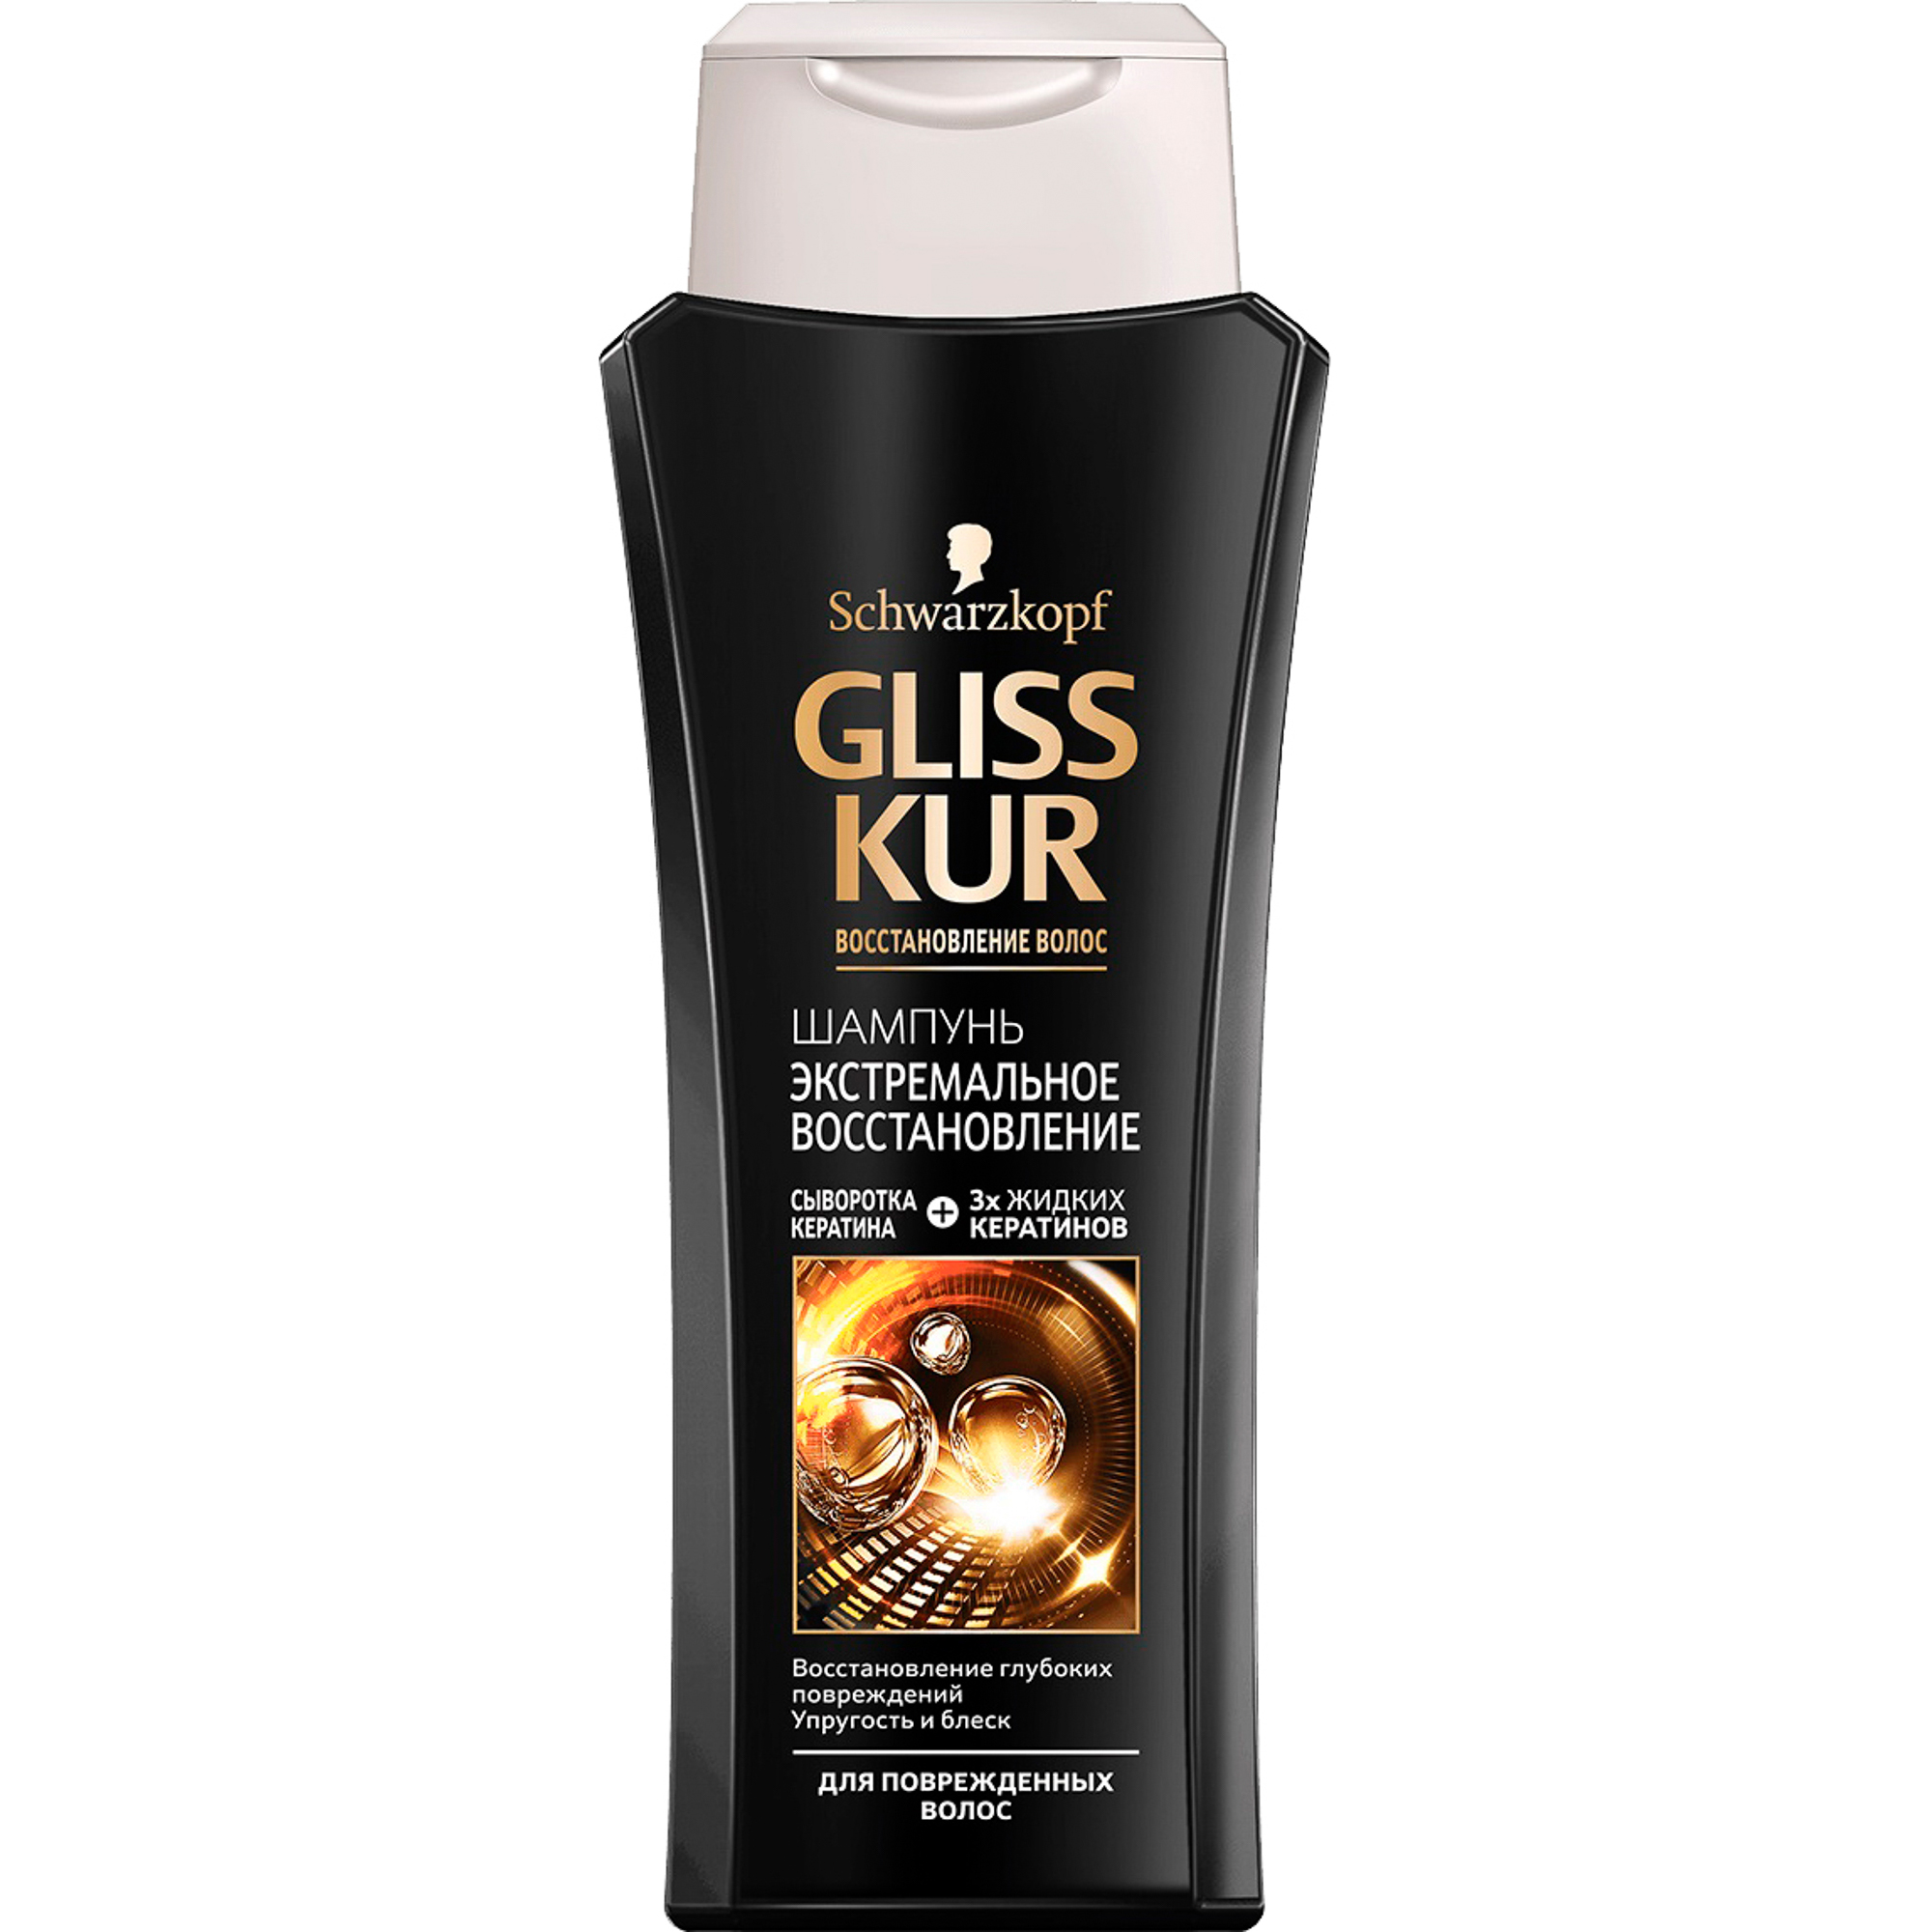 Шампунь GLISS KUR Экстремальное восстановление 250 мл gliss kur экстремальное восстановление шампунь для поврежденных волос